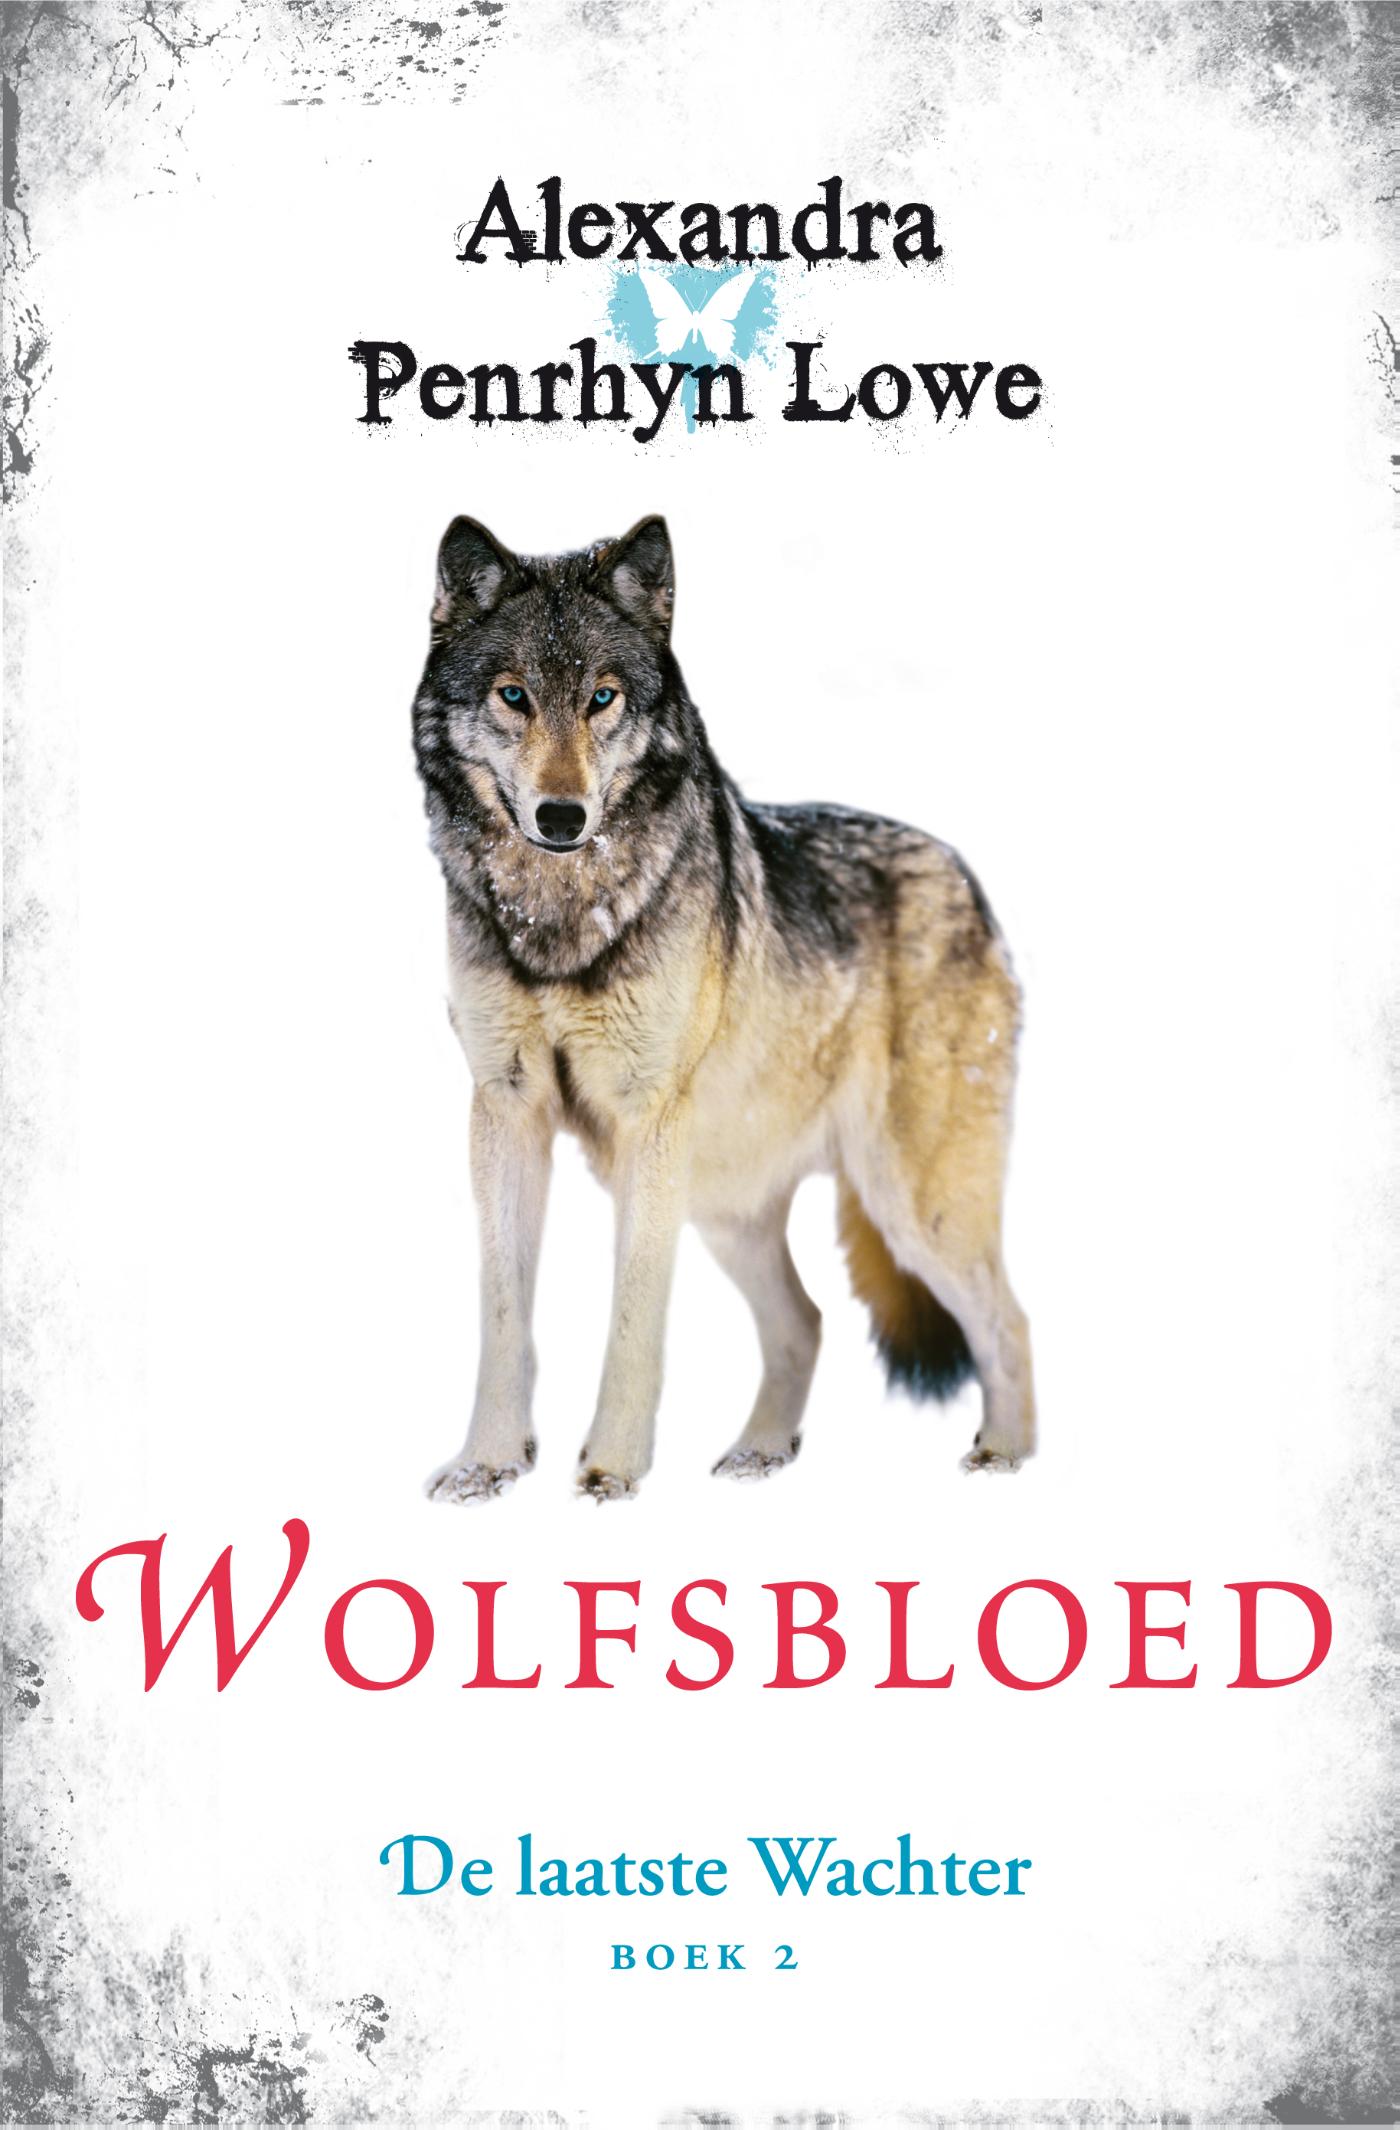 Wolfsbloed (Ebook)